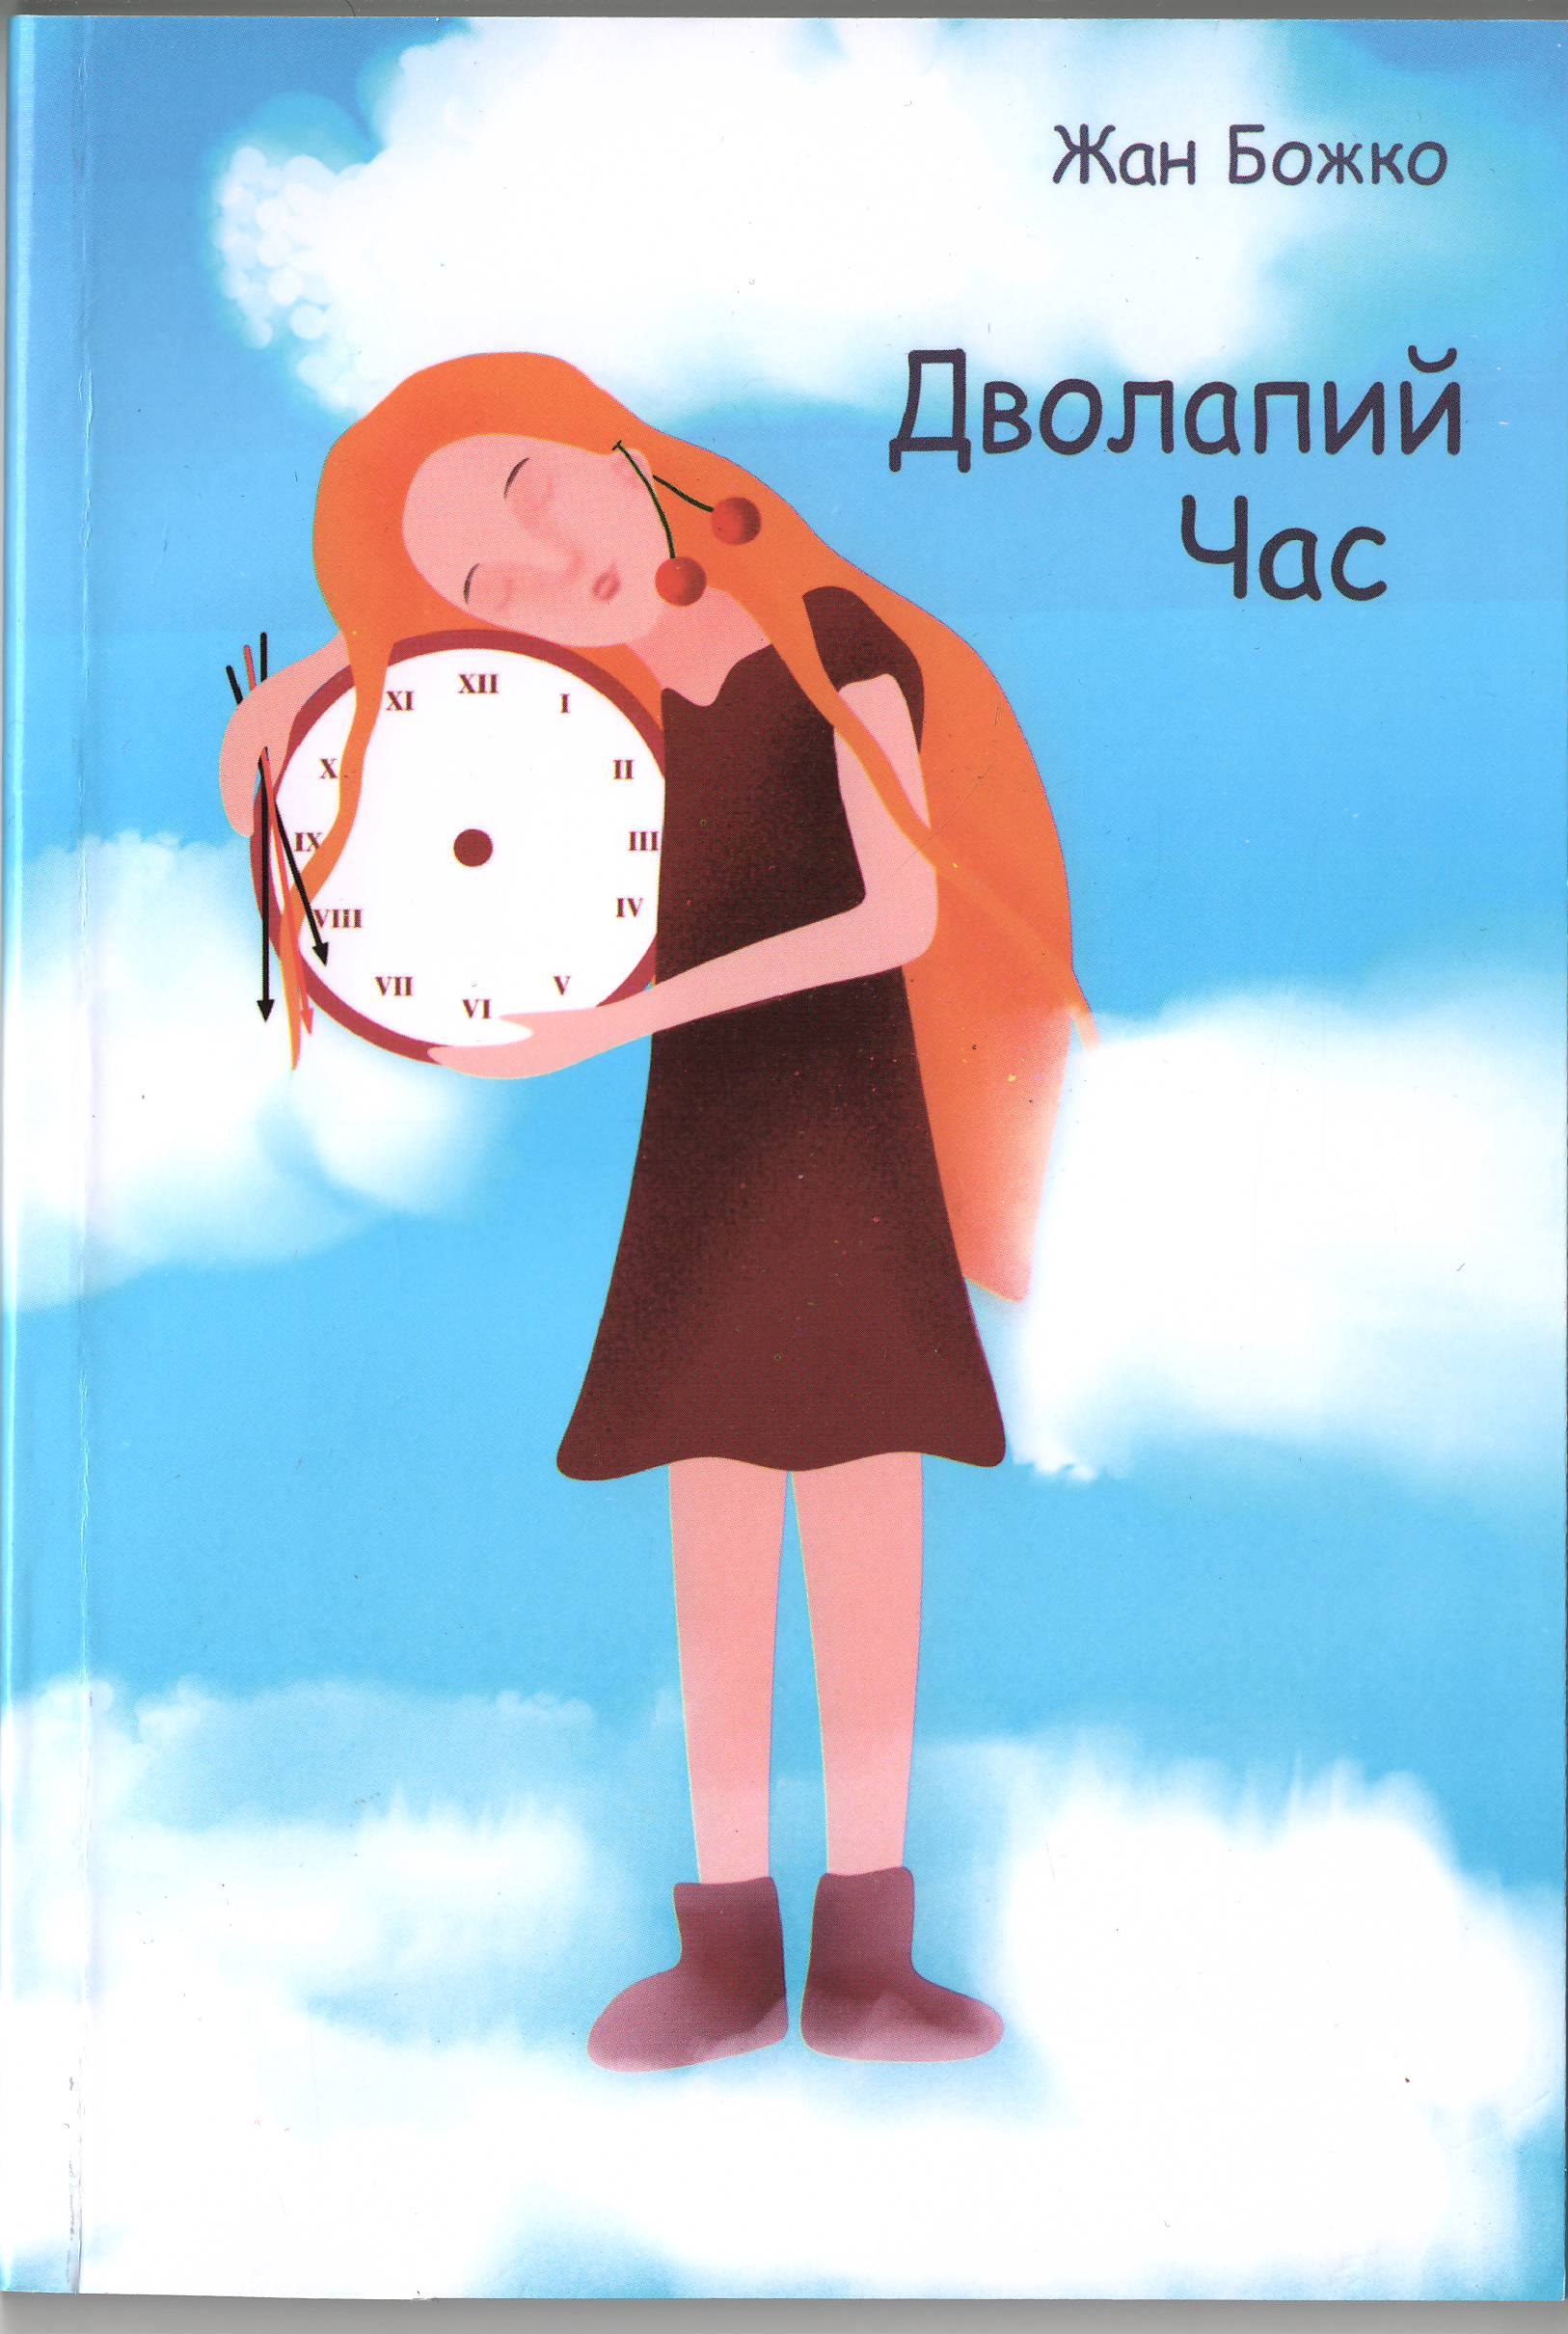 В Ужгороді презентують книгу Жана Божка "Дволапий час" у перекладі Віктора Мотрука